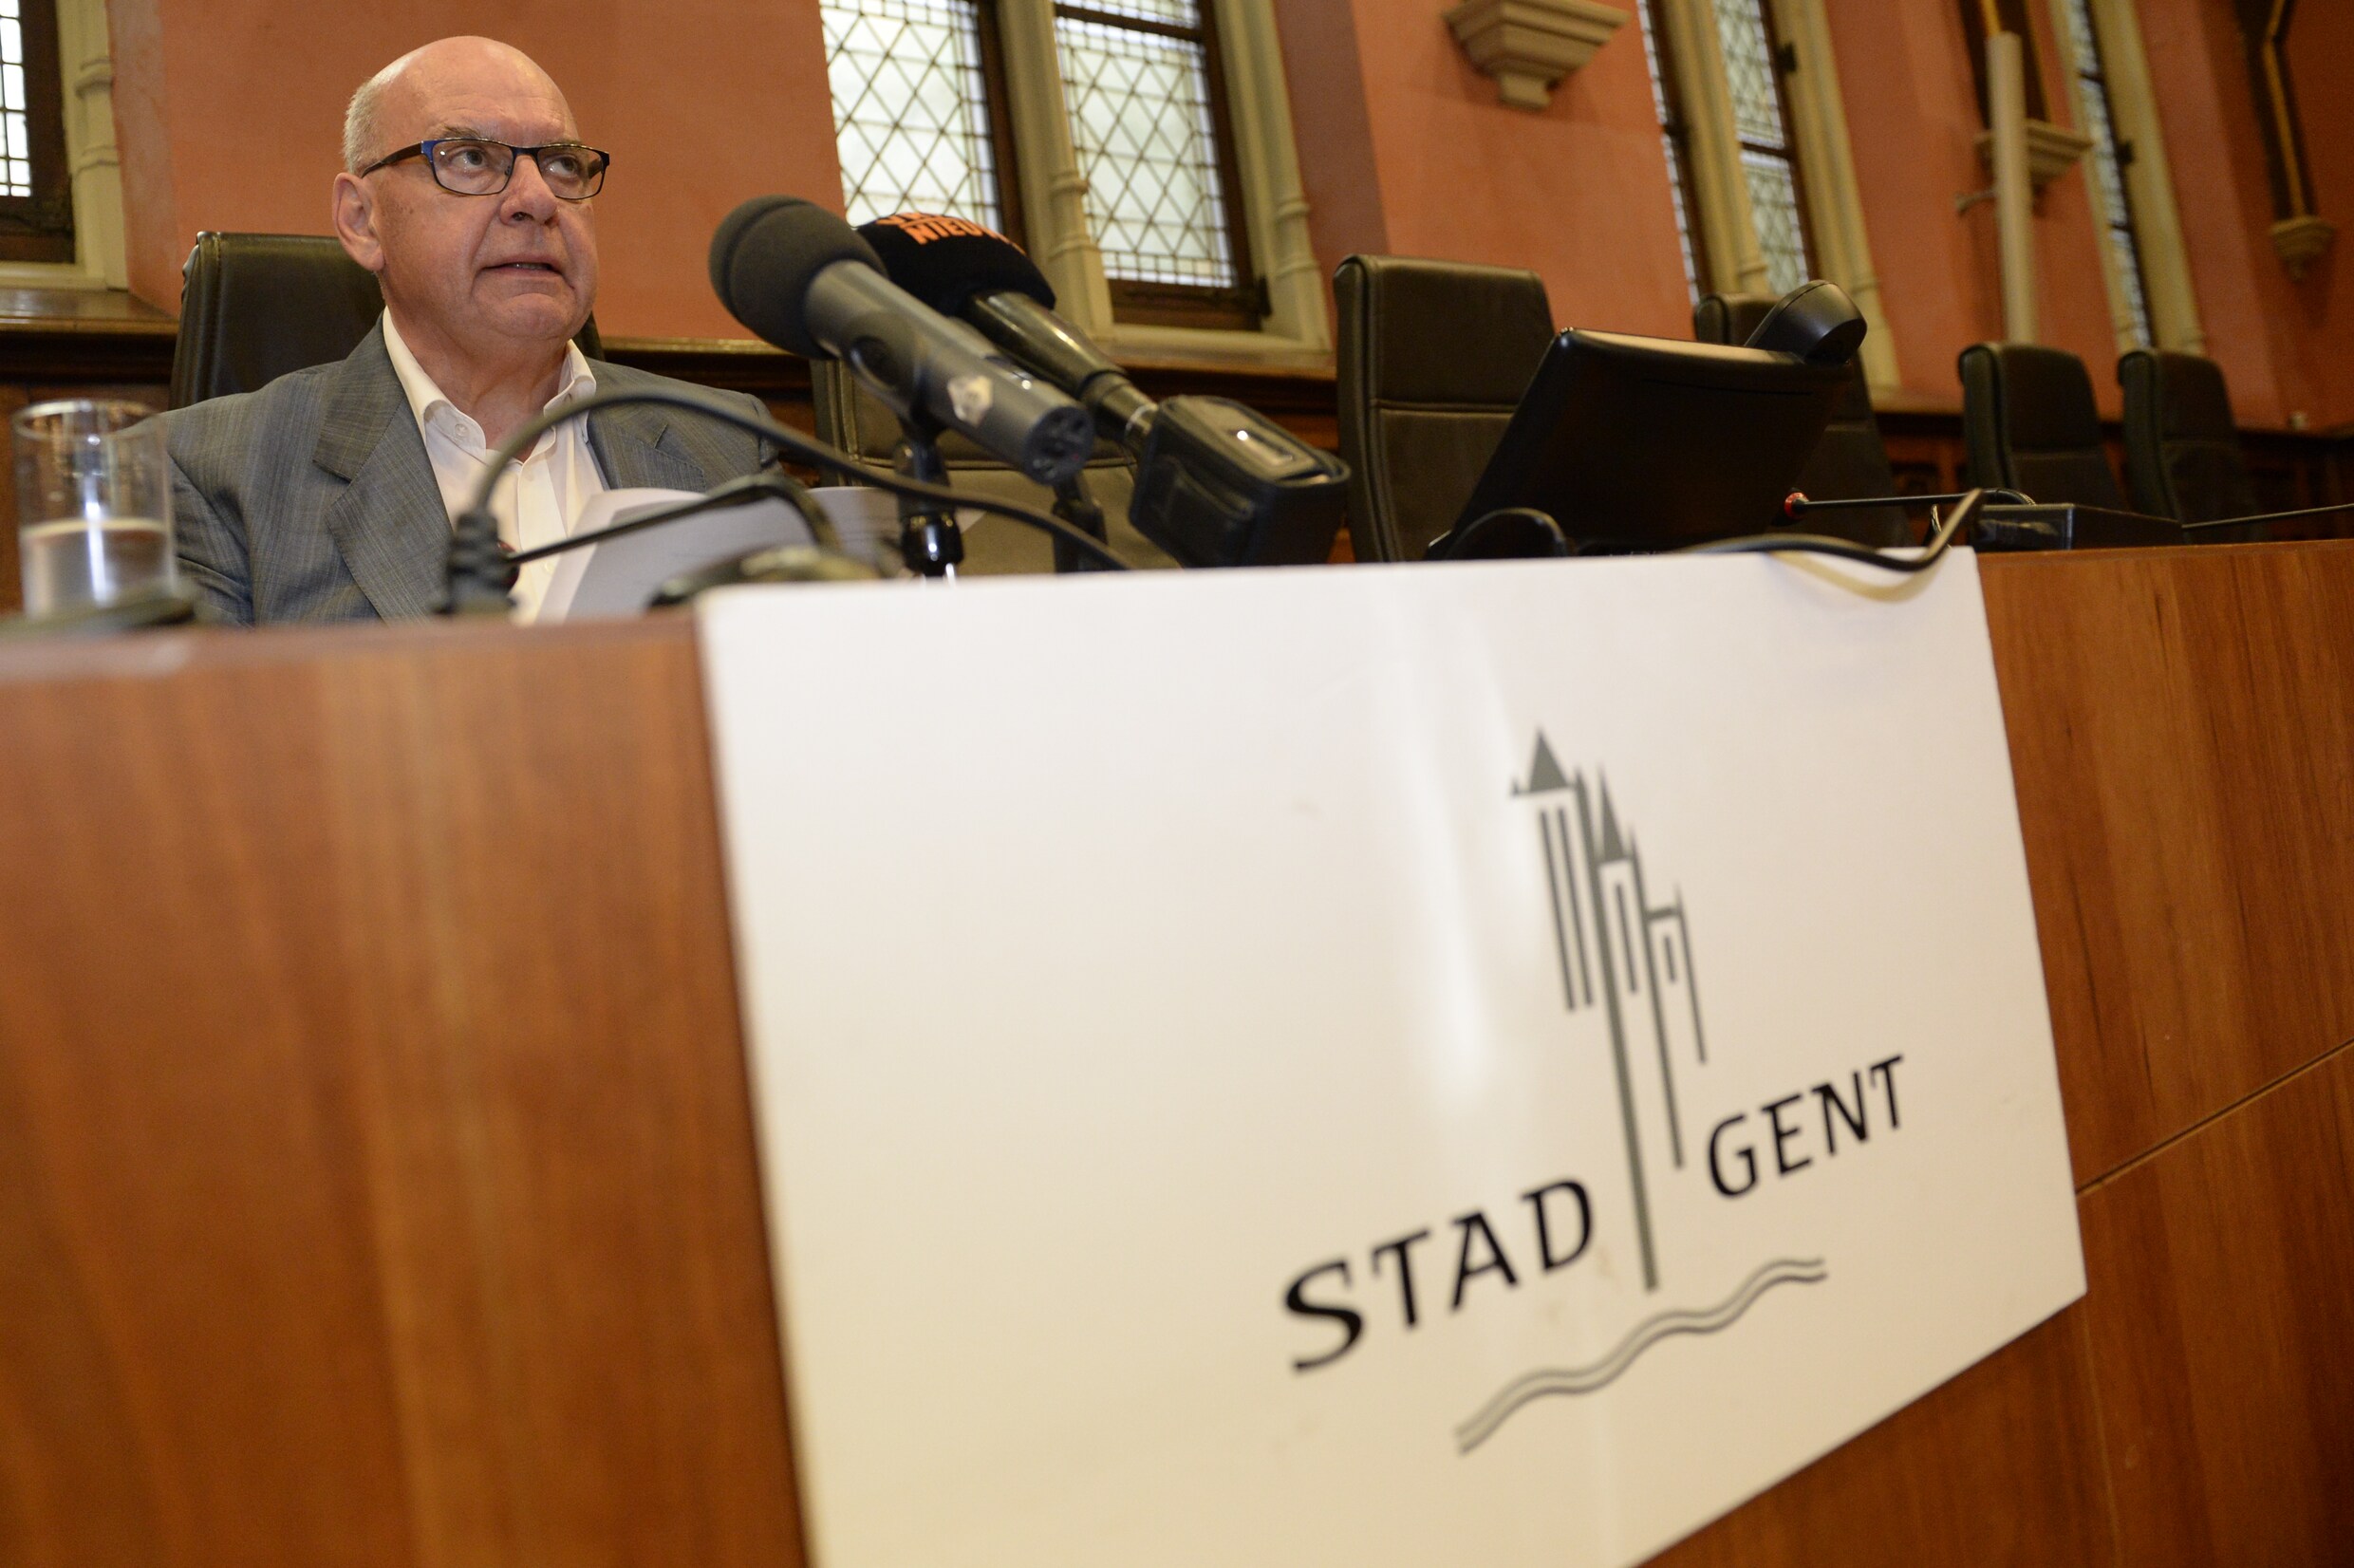 "Deontologische commissie stad Gent is een schertscommissie"